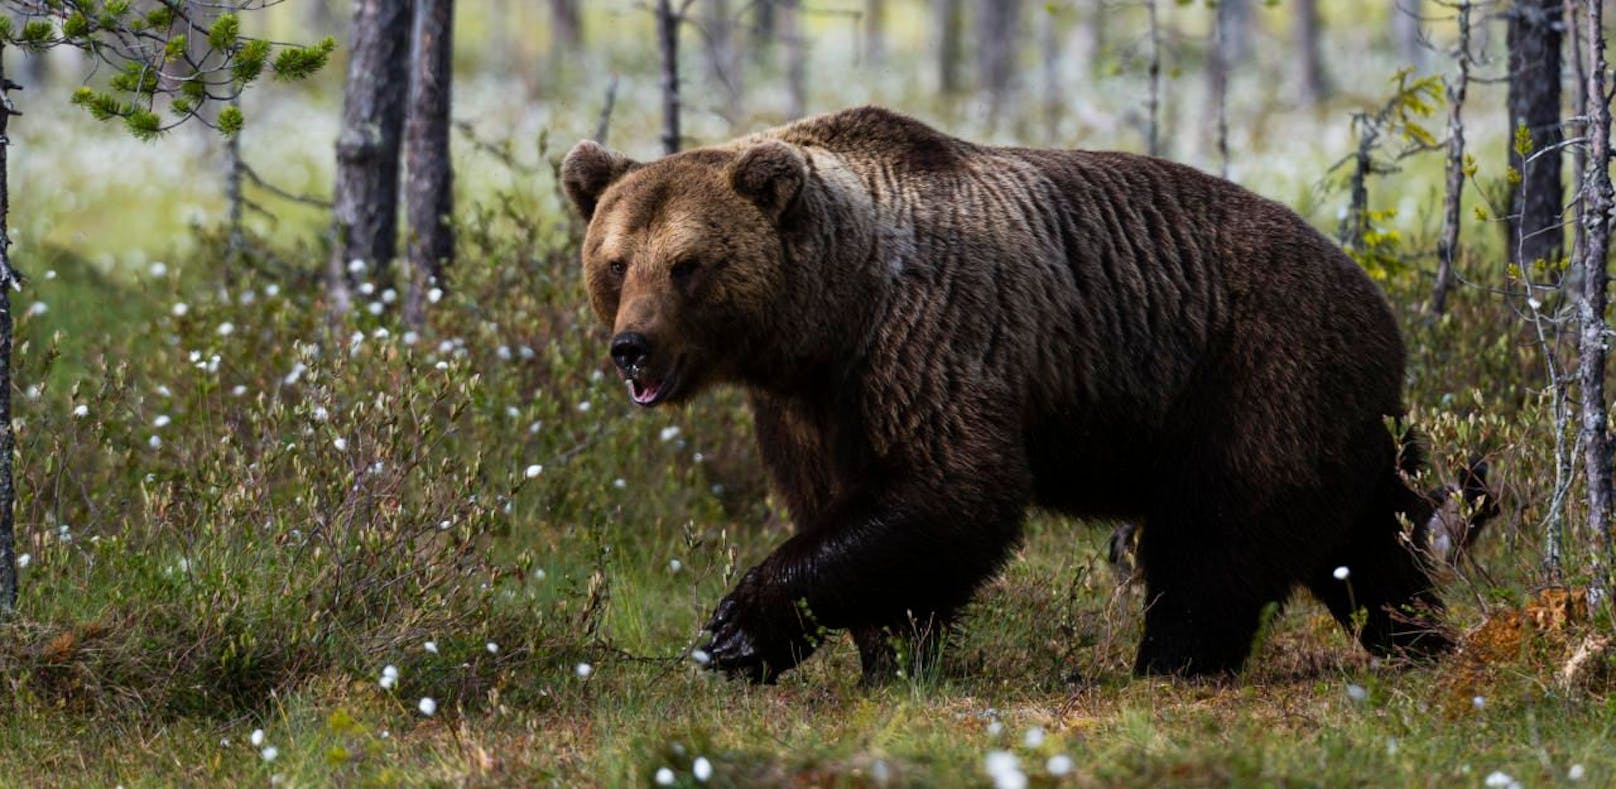 Bär jagt verirrte Russen auf Baum und rettet sie so